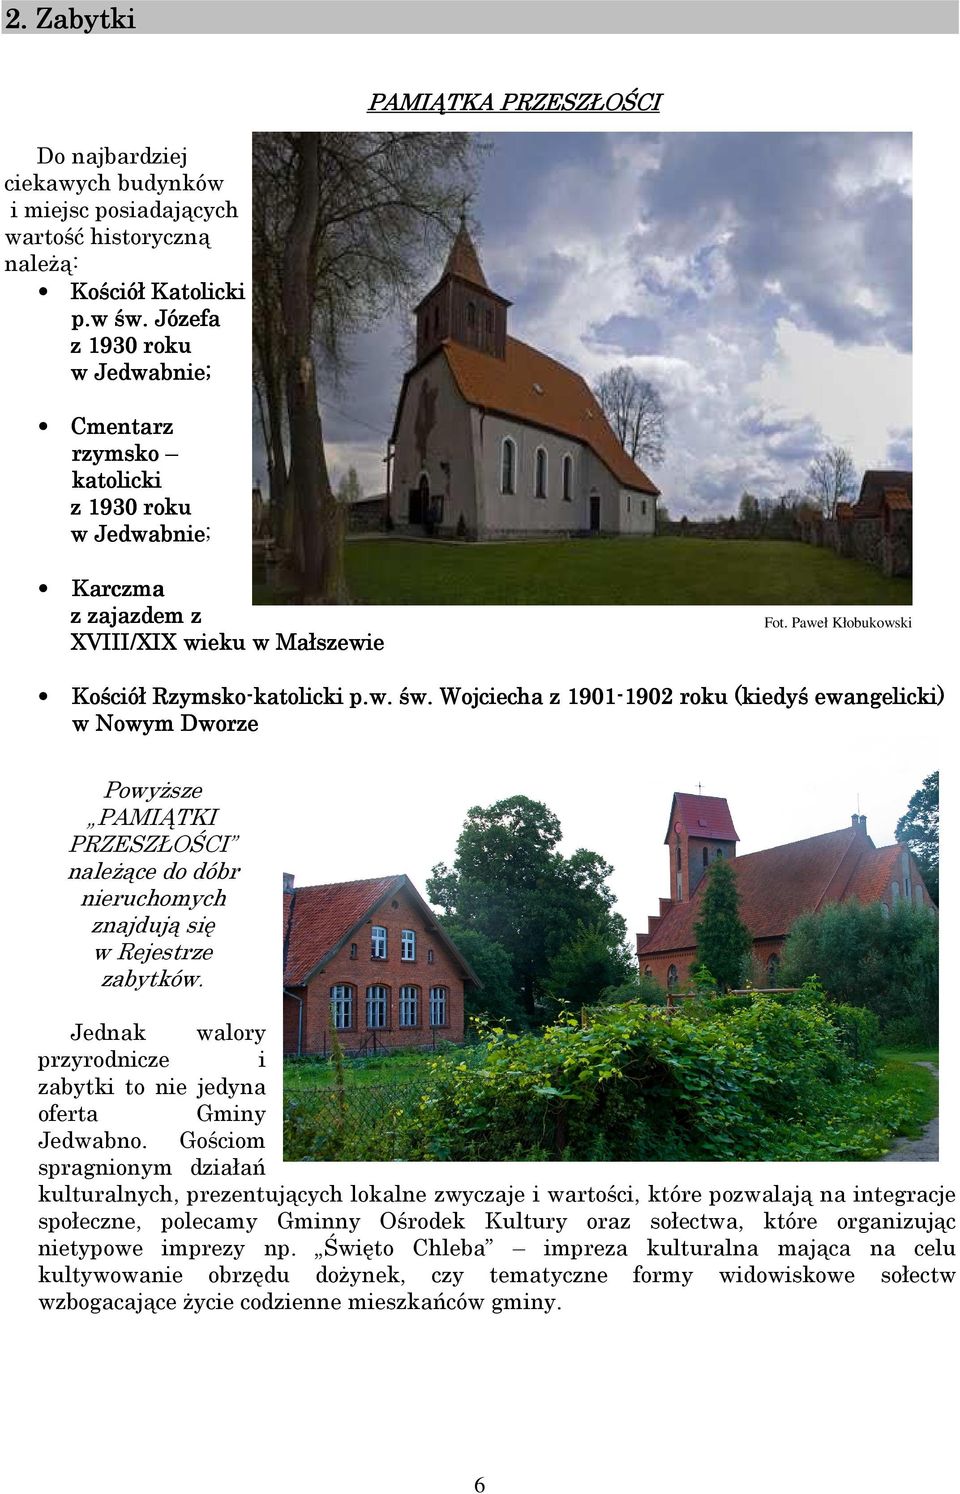 Wojciecha z 1901-1902 1902 roku r (kiedyś ewangelicki) w Nowym Dworze Powyższe PAMIĄTKI PRZESZŁOŚCI należące do dóbr nieruchomych znajdują się w Rejestrze zabytków.